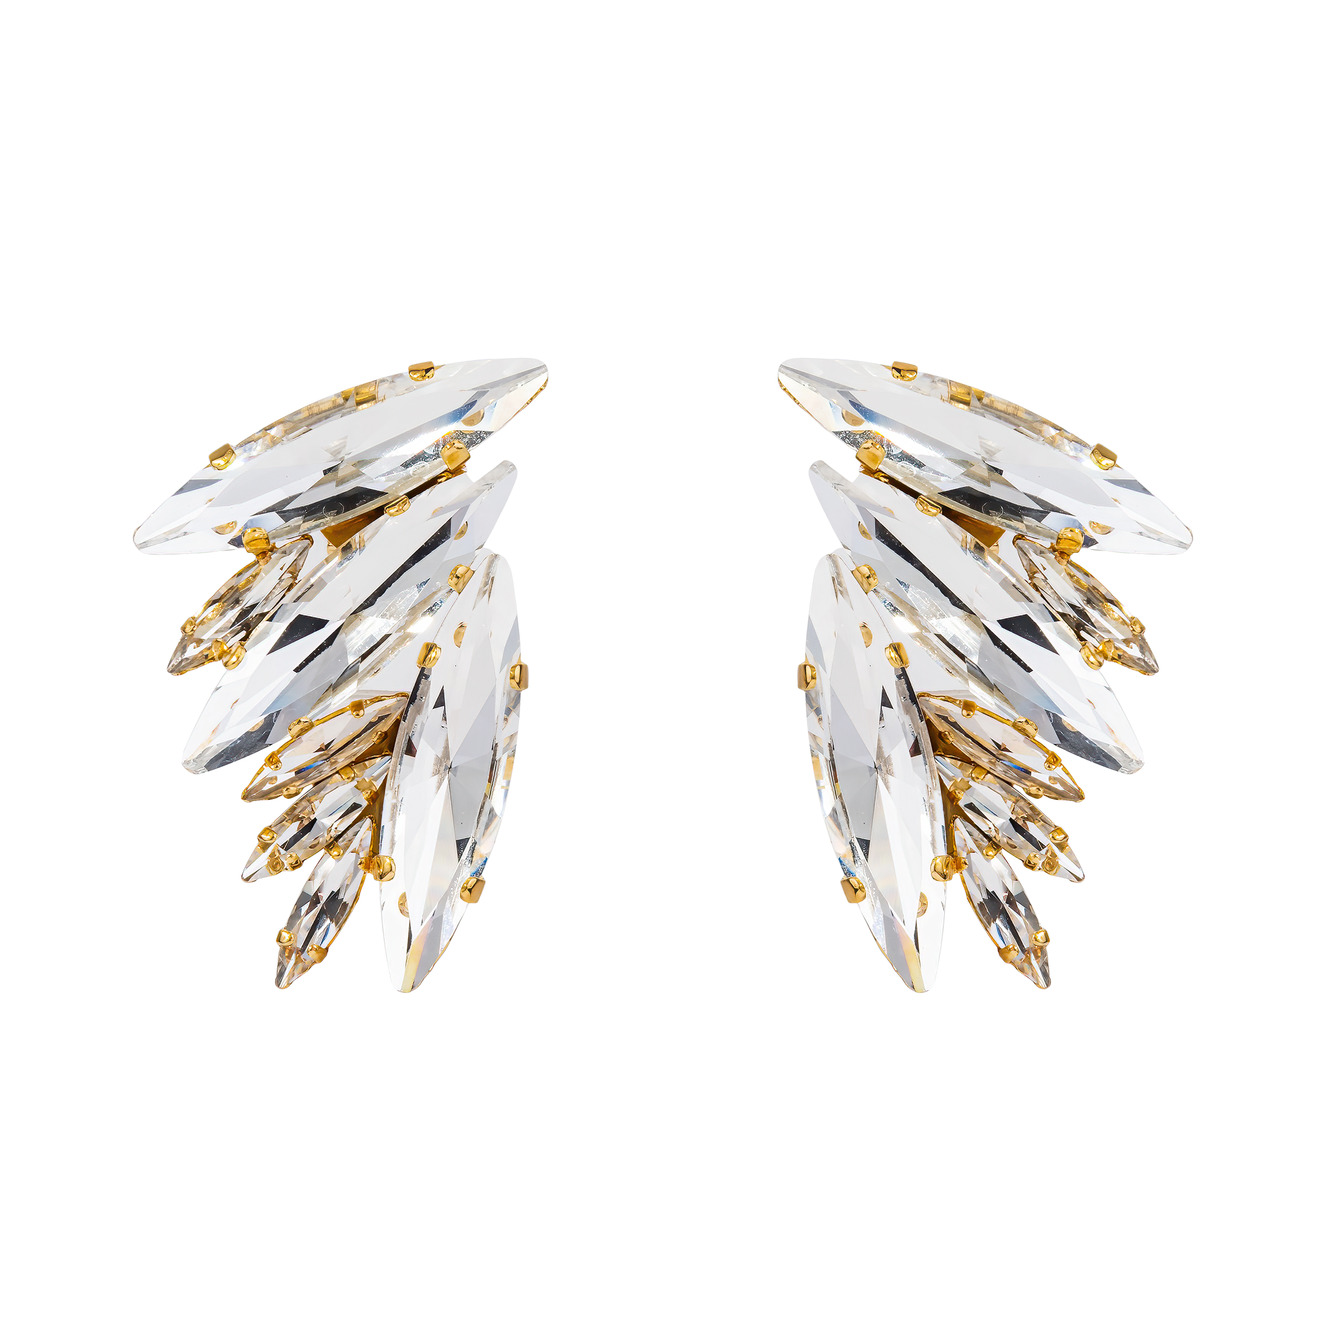 Ellen Conde Позолоченные массивные серьги в форме крыльев с крупными удлигненными кристалами